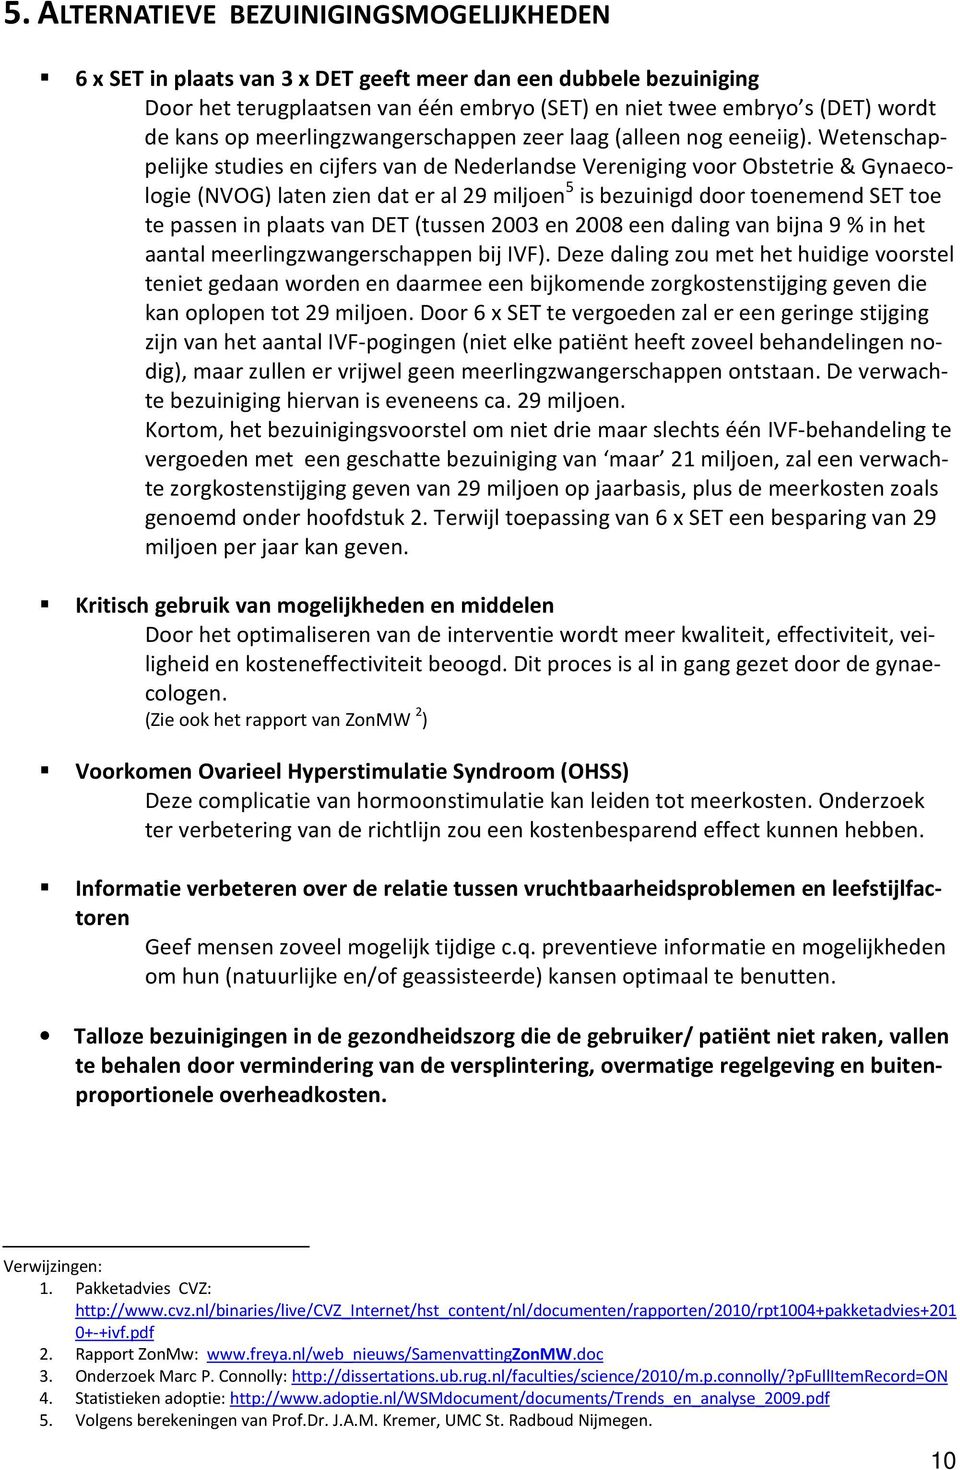 Wetenschappelijke studies en cijfers van de Nederlandse Vereniging voor Obstetrie & Gynaecologie (NVOG) laten zien dat er al 29 miljoen 5 is bezuinigd door toenemend SET toe te passen in plaats van